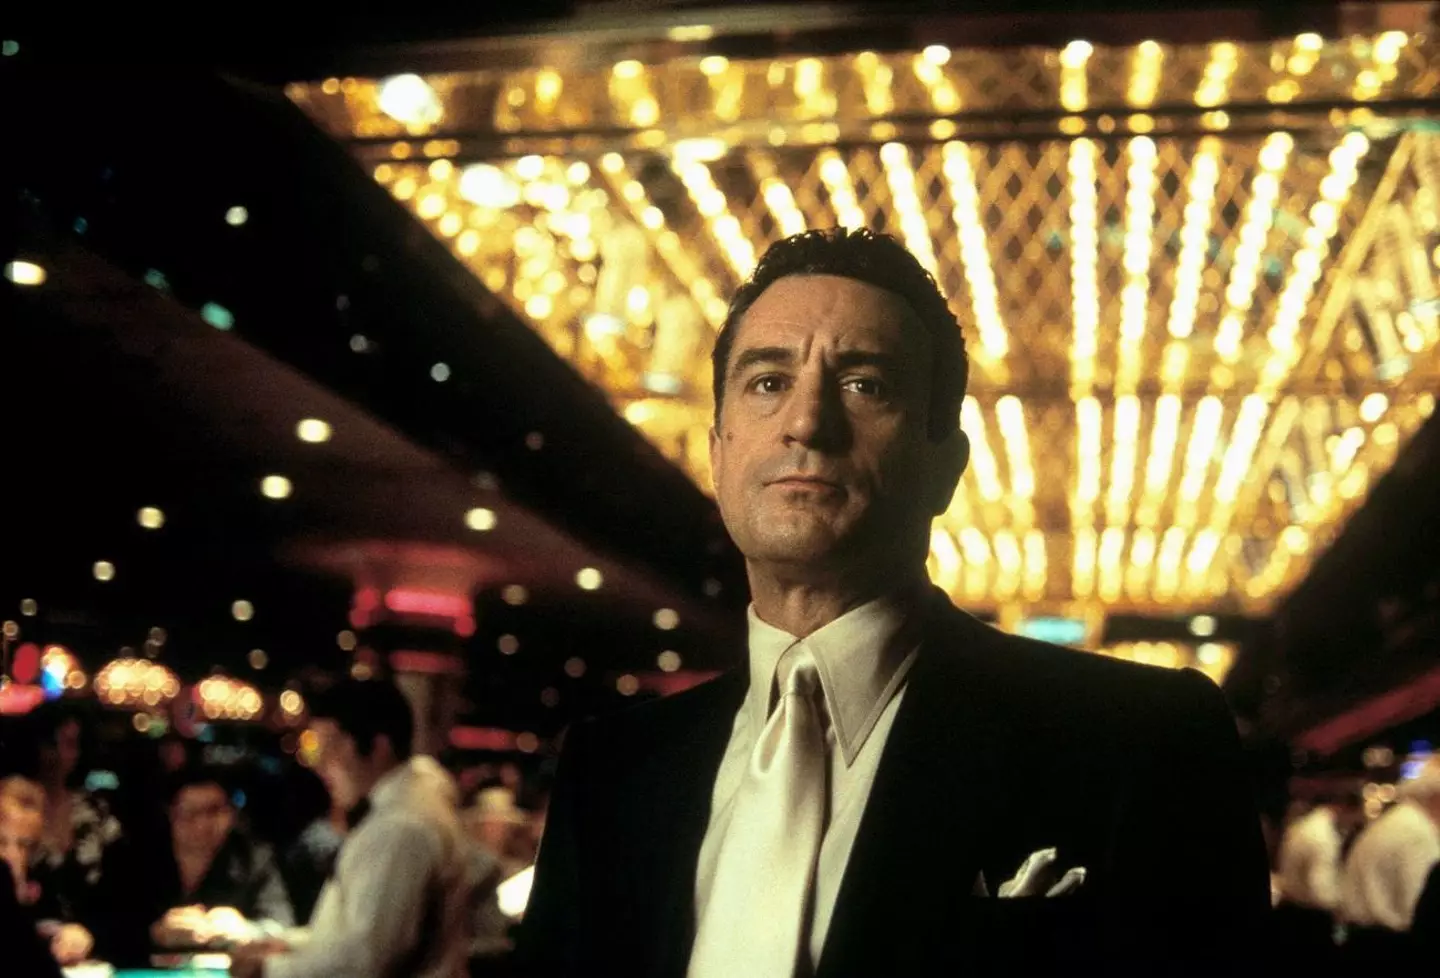 Robert De Niro in Casino (1995).